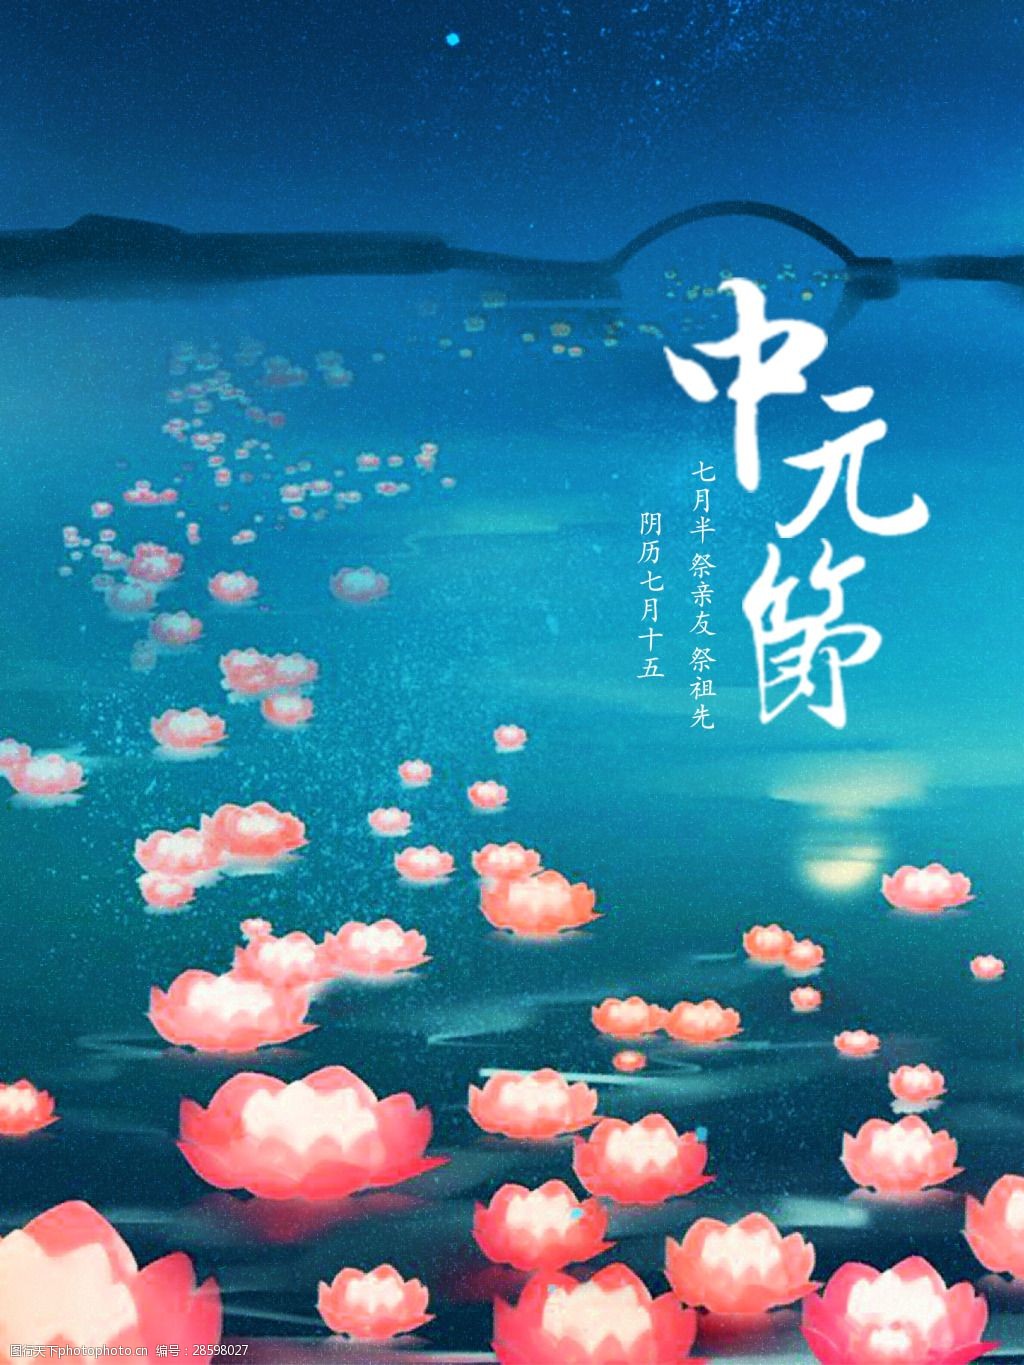 简约宣传海报 中元节 节日 宣传 简约 海报 祭拜 中国 传统 七月半